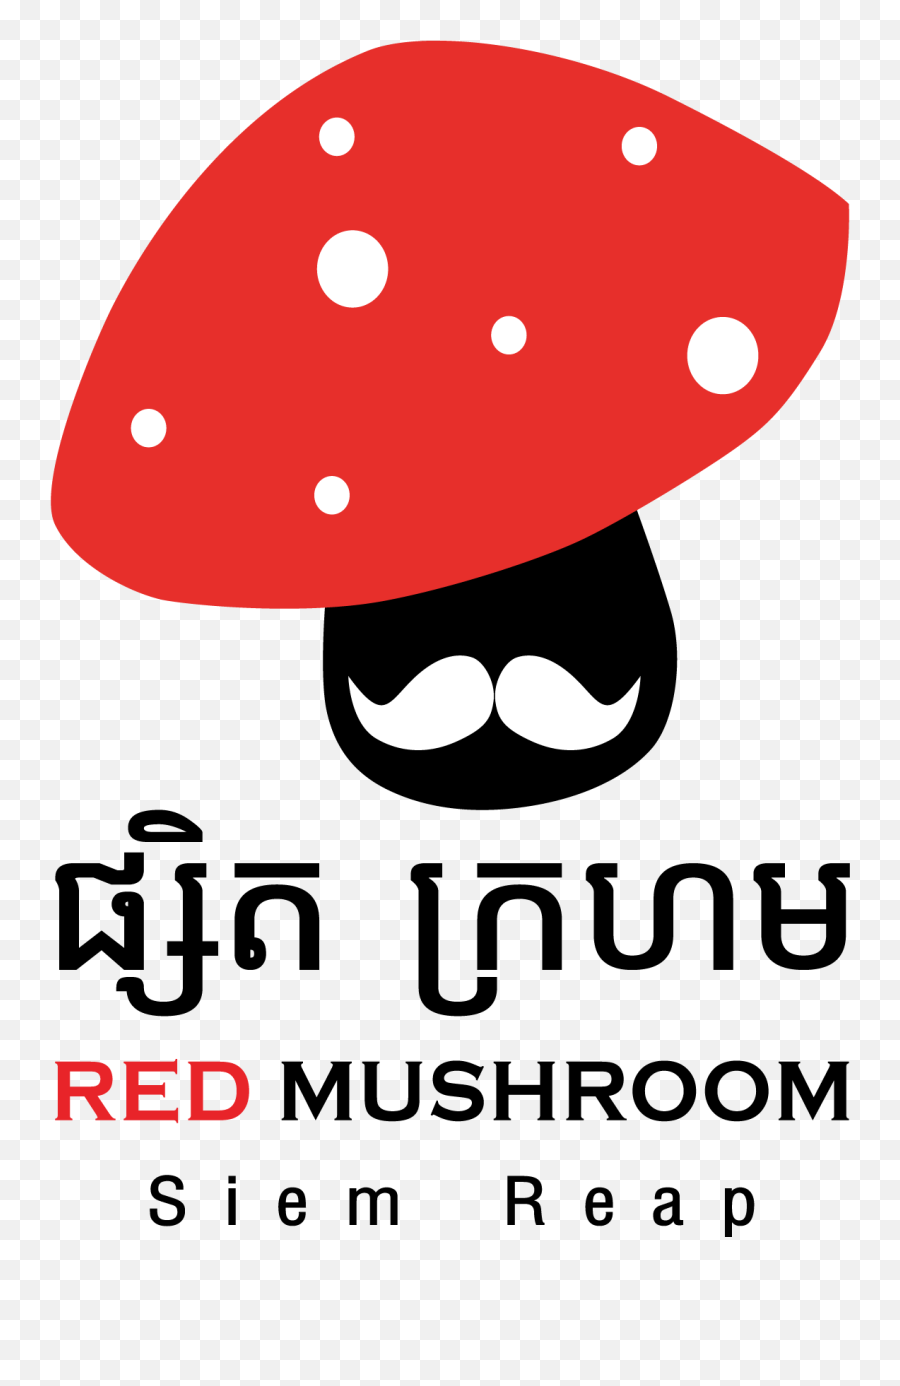 Mushroom Logo Png Image - Medicinal Mushroom,Mushroom Logo